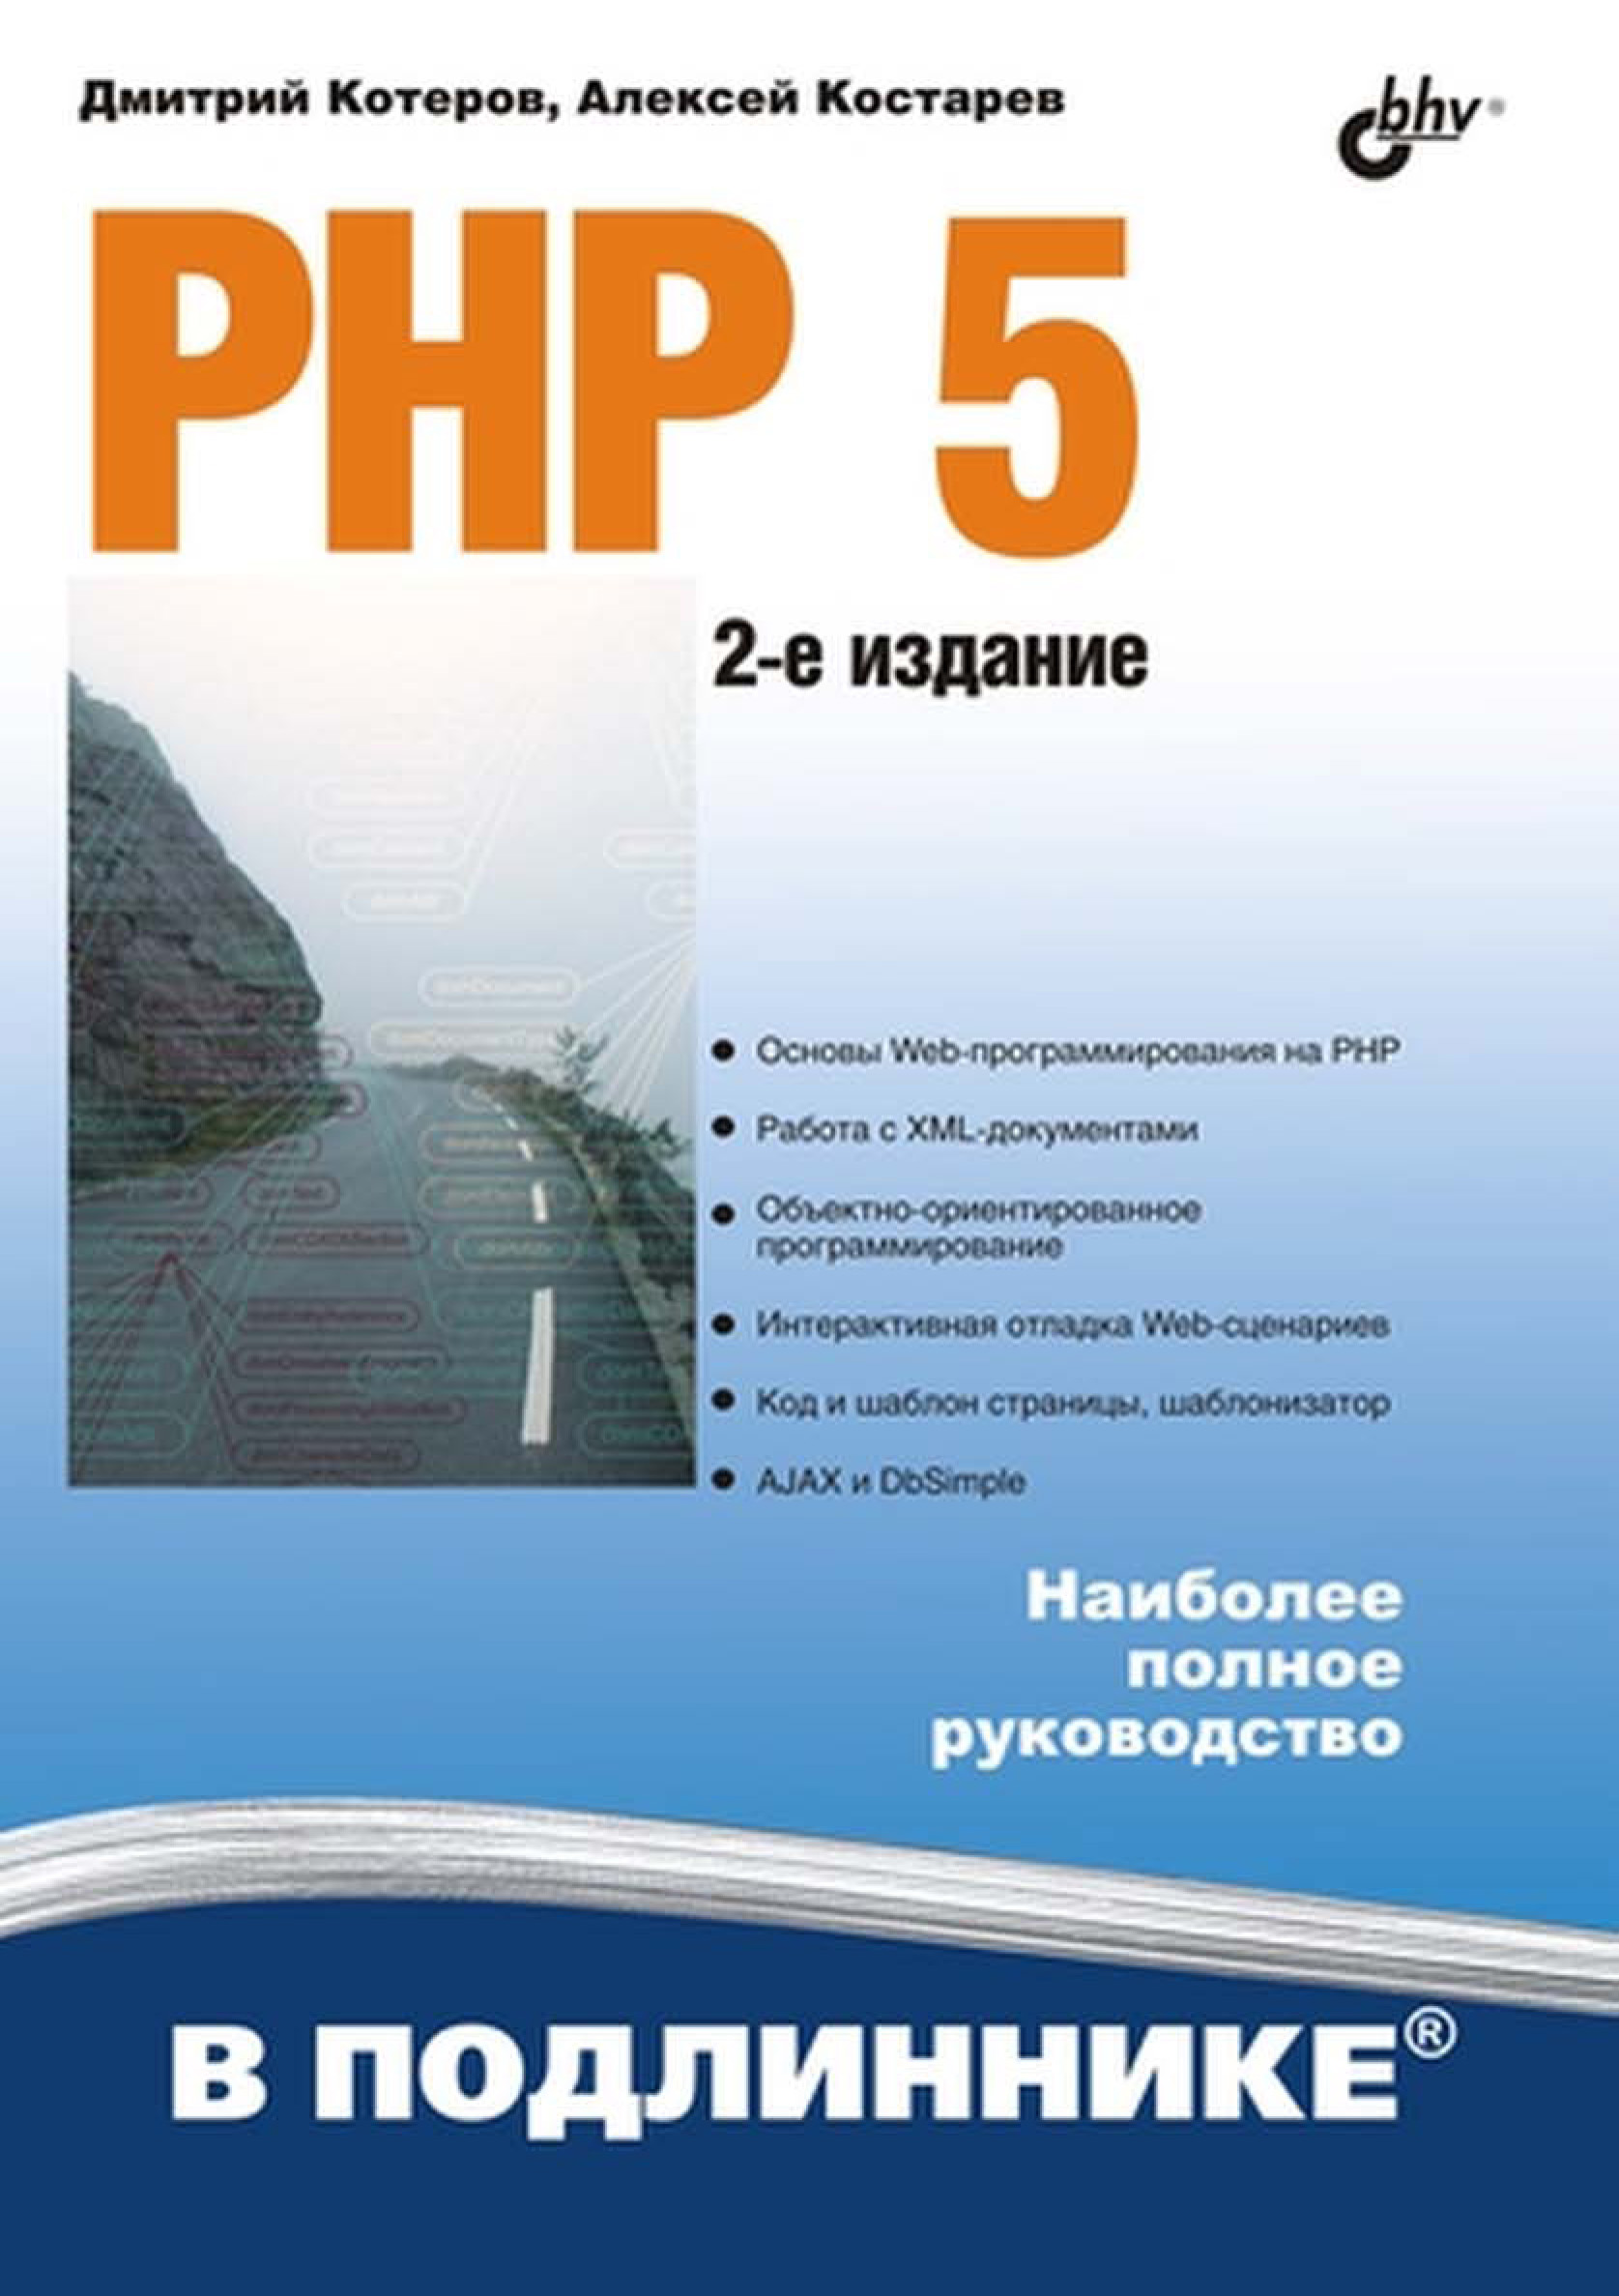 Книга В подлиннике. Наиболее полное руководство PHP 5 созданная Дмитрий Котеров, Алексей Костарев может относится к жанру интернет, программирование. Стоимость электронной книги PHP 5 с идентификатором 6991697 составляет 543.00 руб.